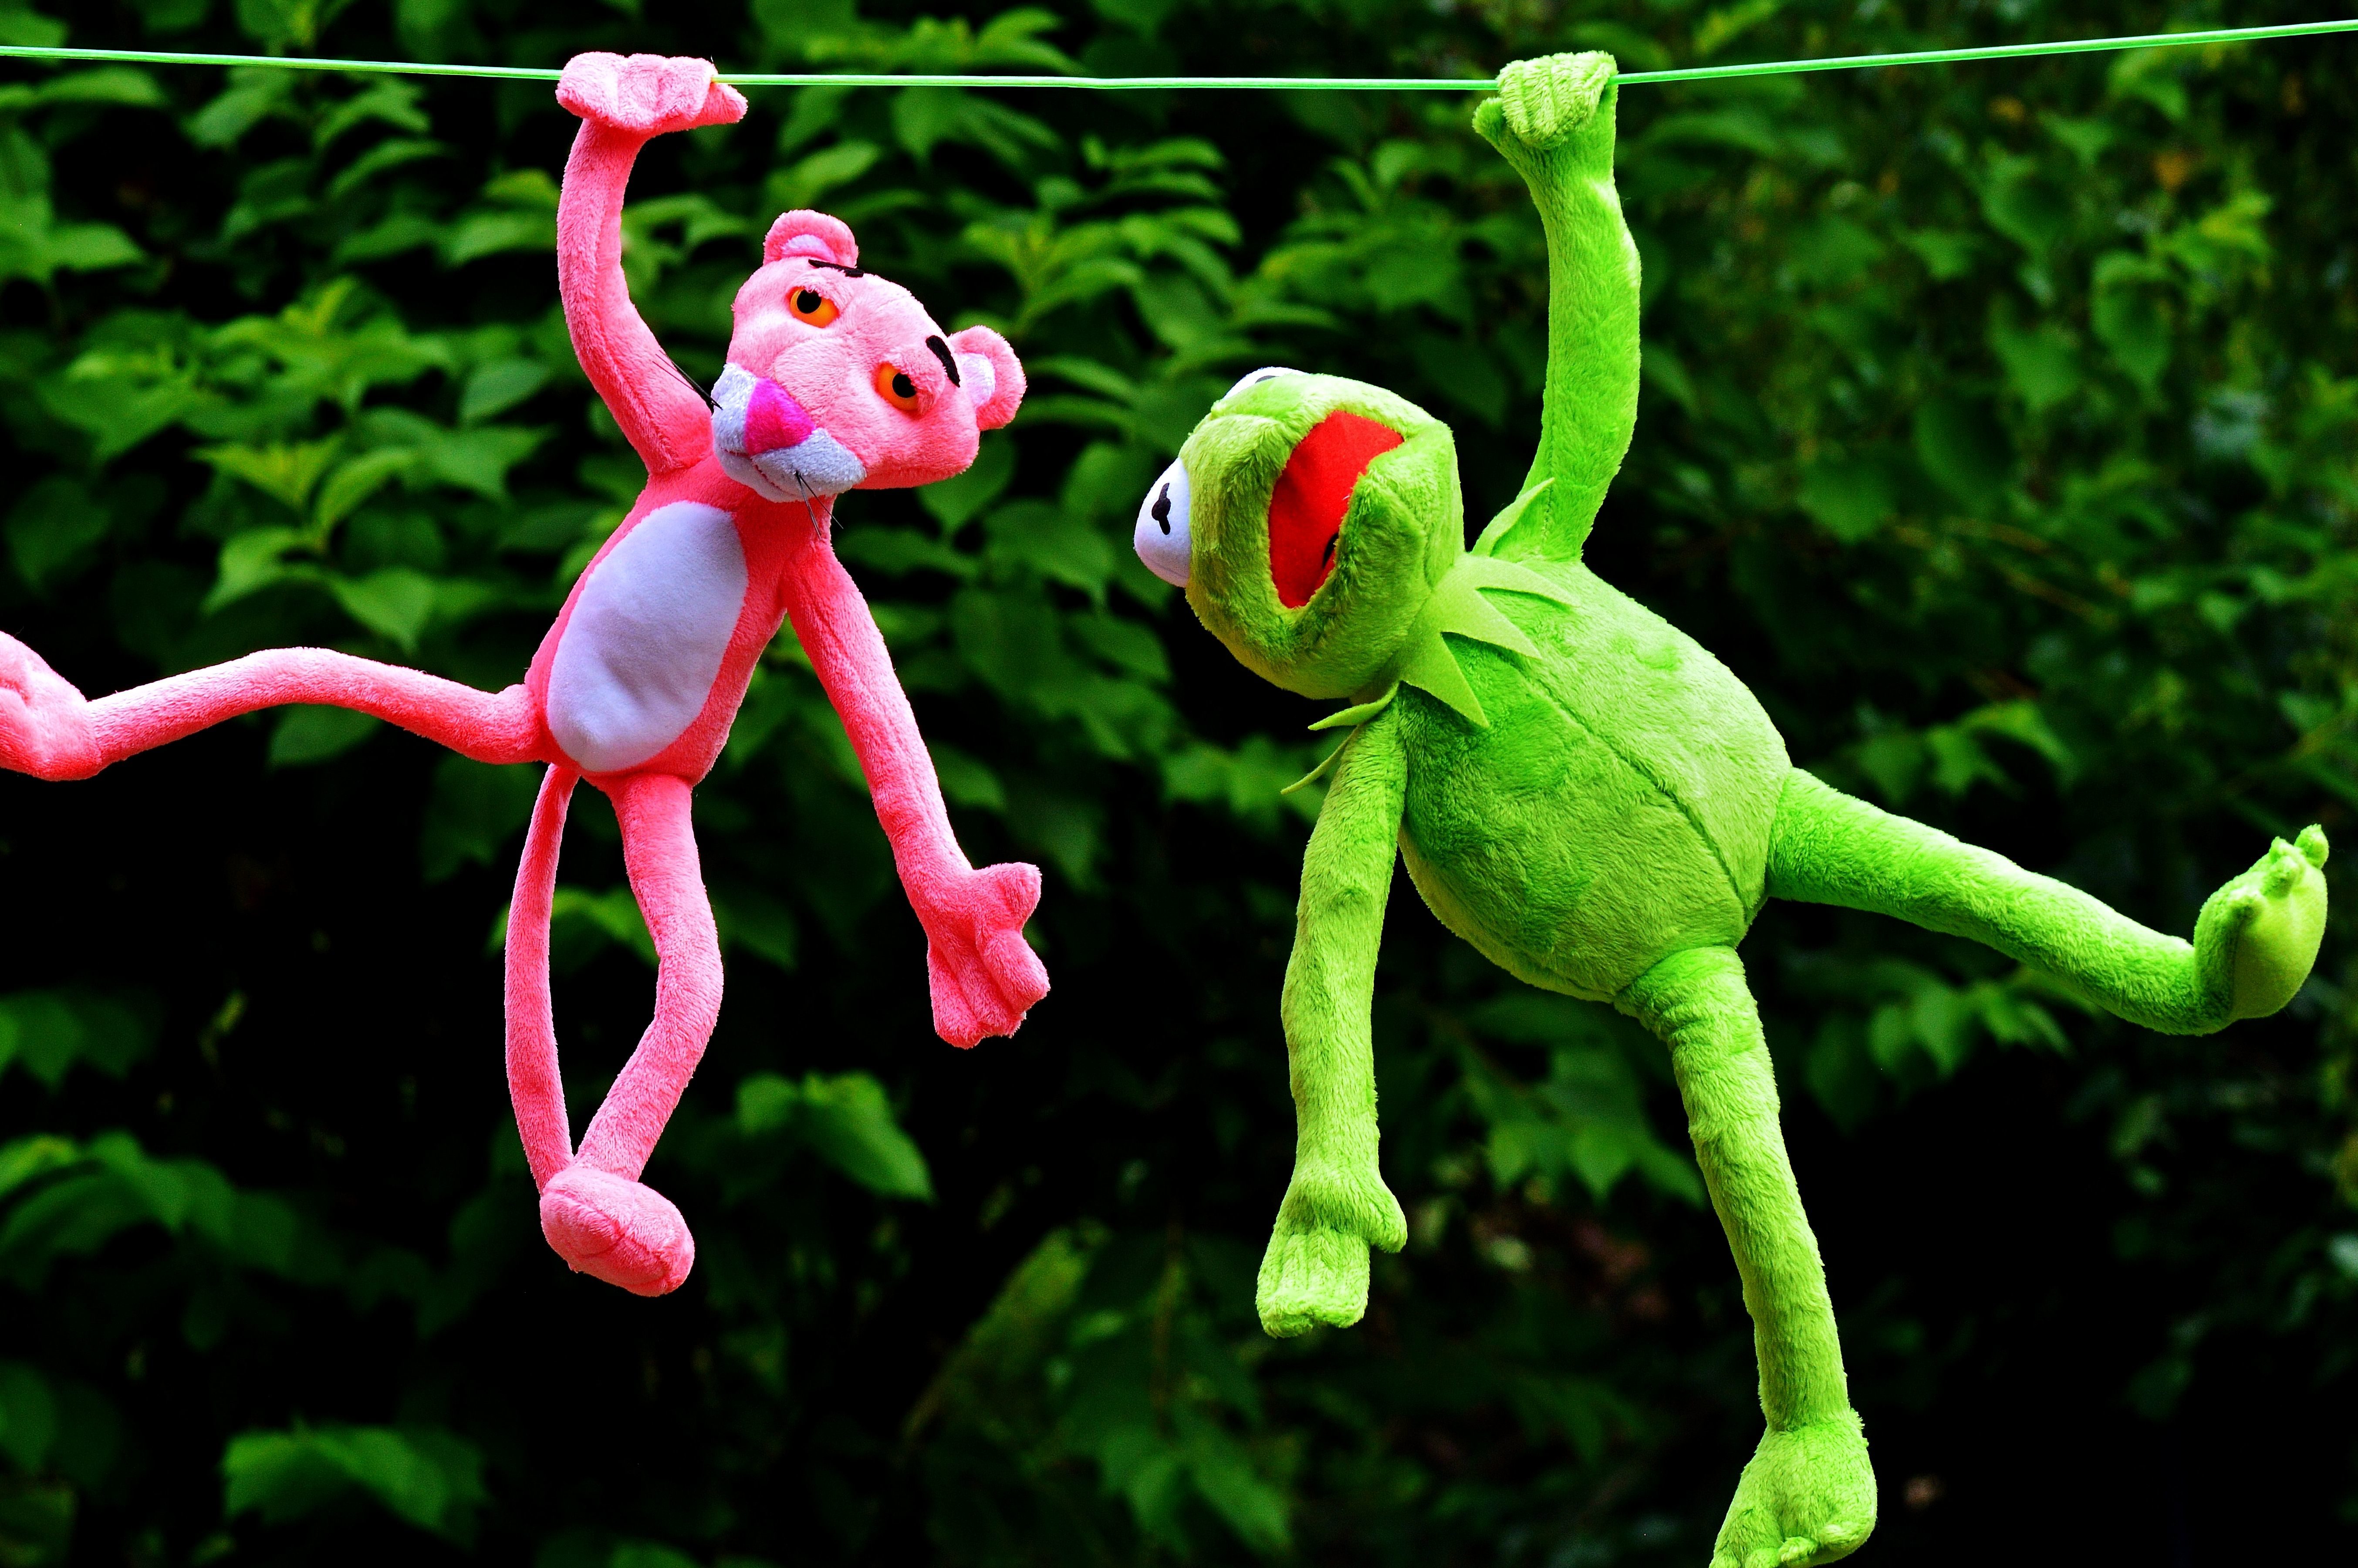 Image libre: jouets en peluche, Kermit la grenouille, la panthère